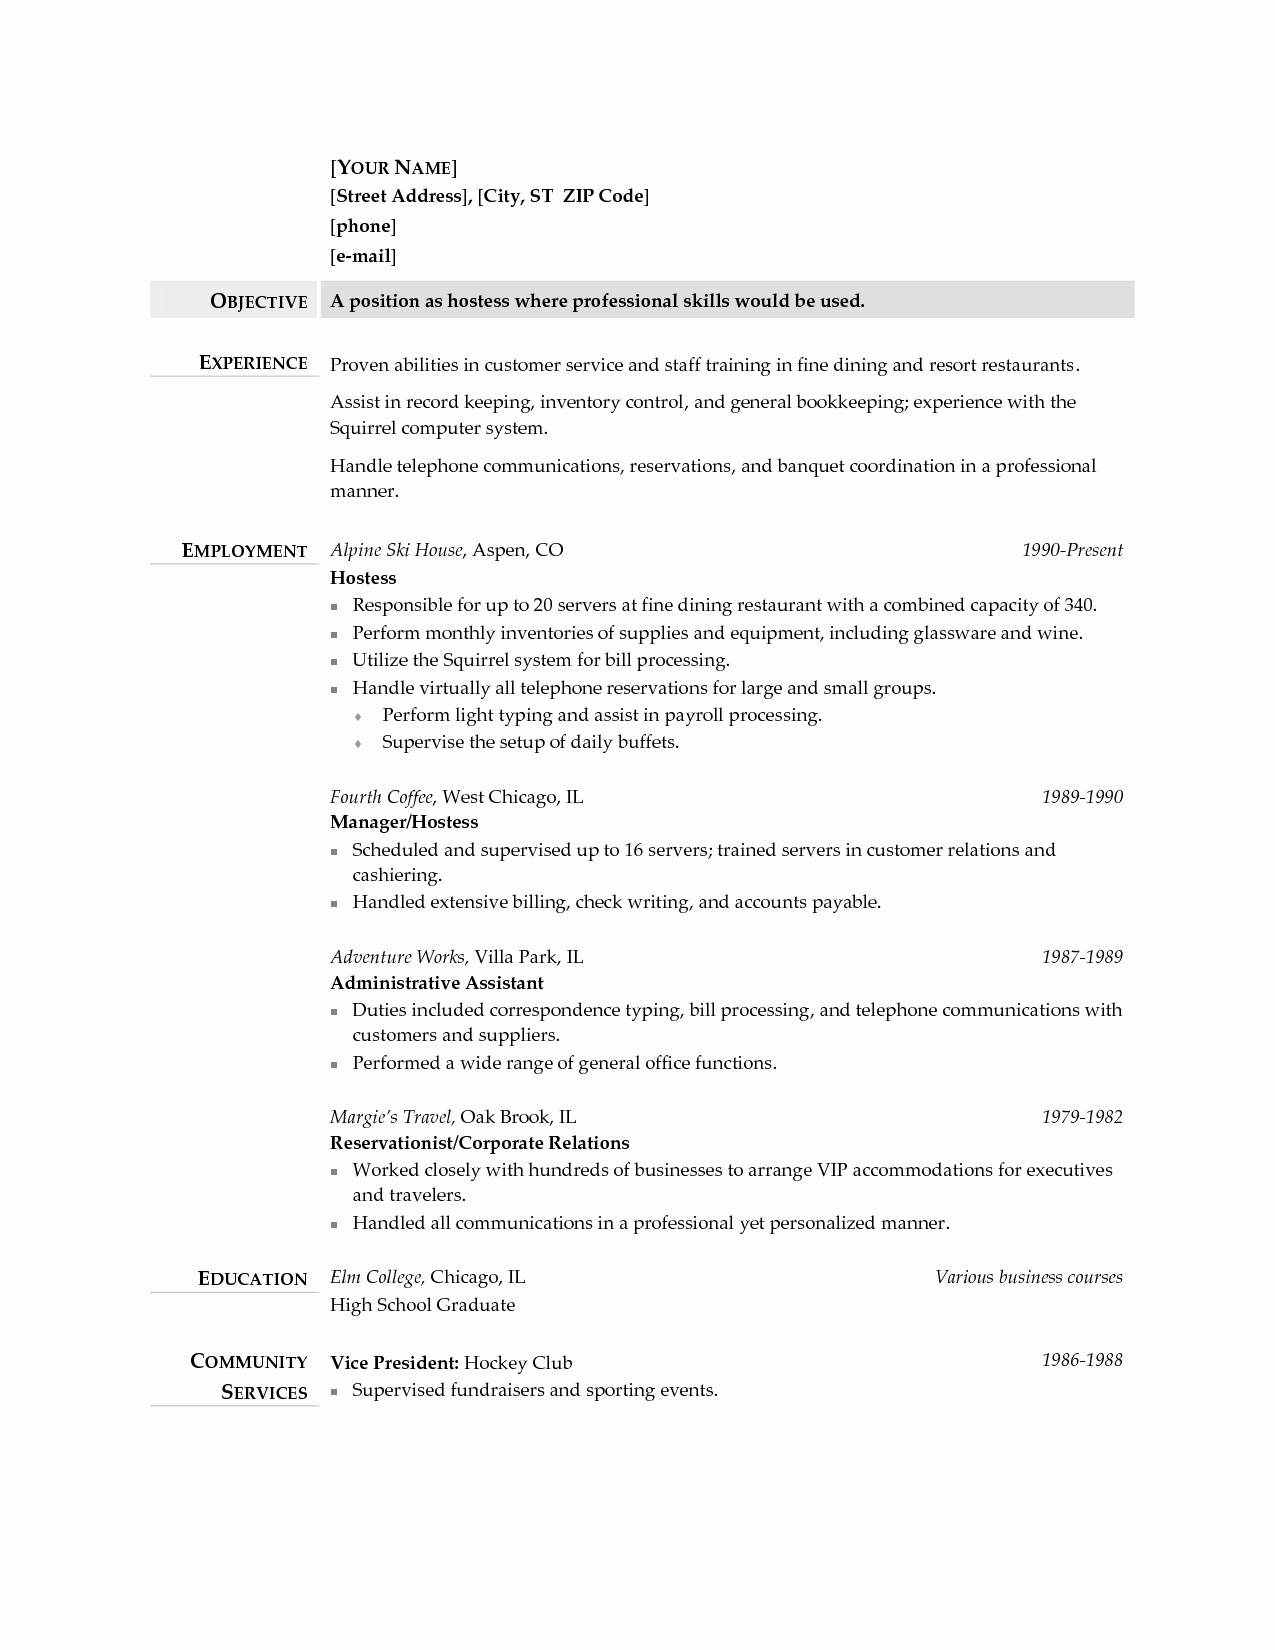 Hostess Job Description for Resume Awesome Hostess Resume